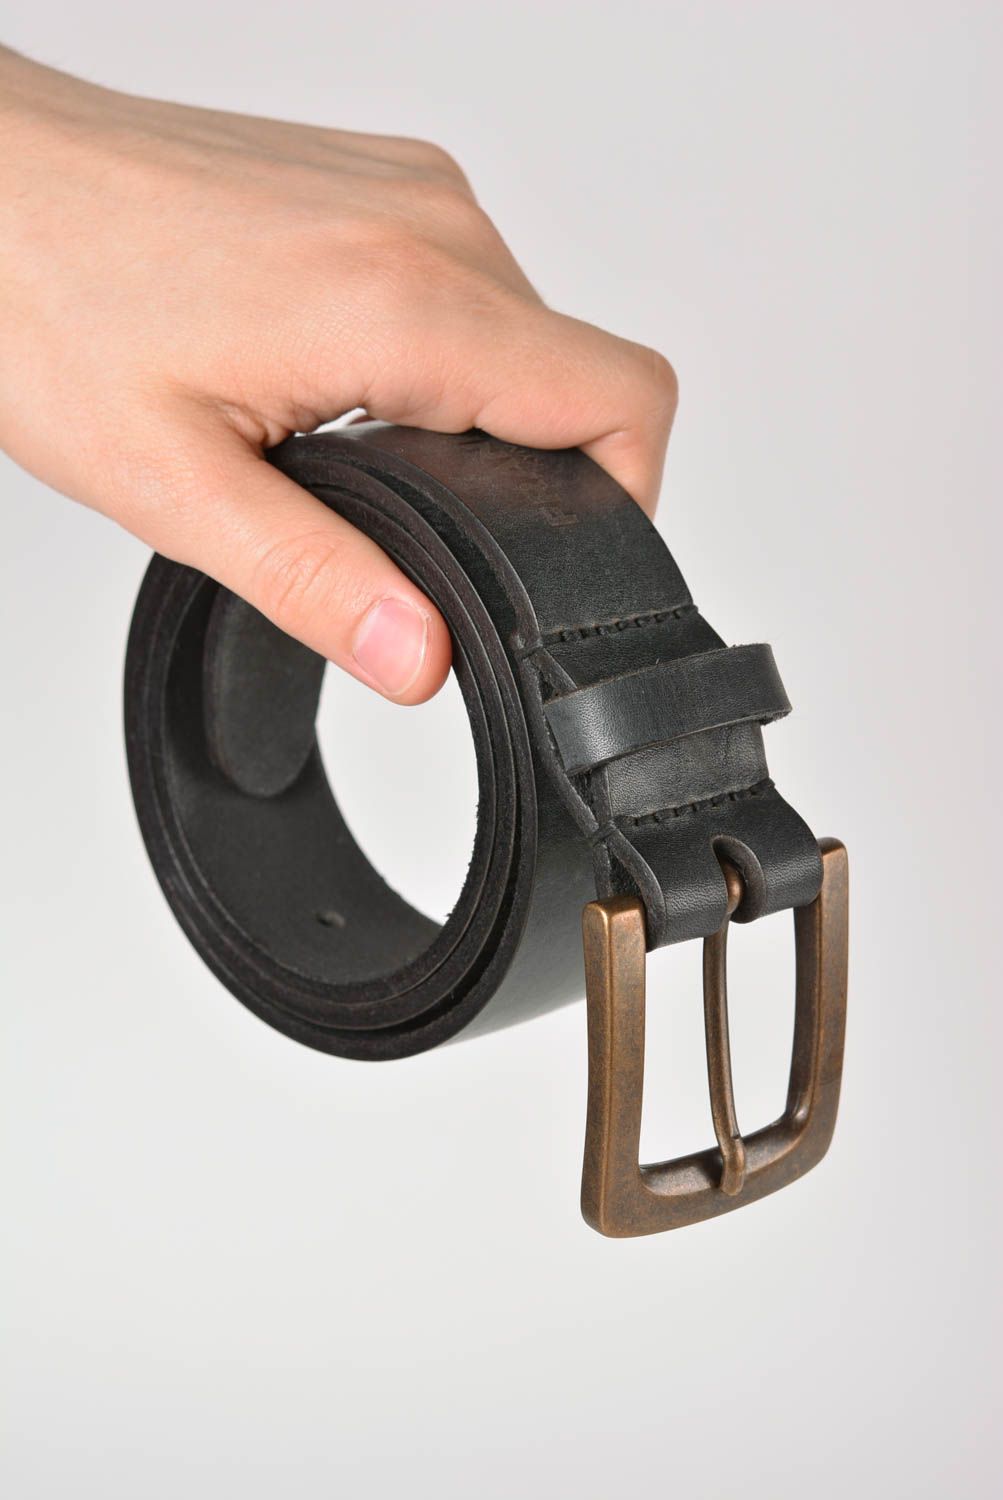 Cinturón de cuero hecho a mano original ropa masculina accesorio de moda foto 4